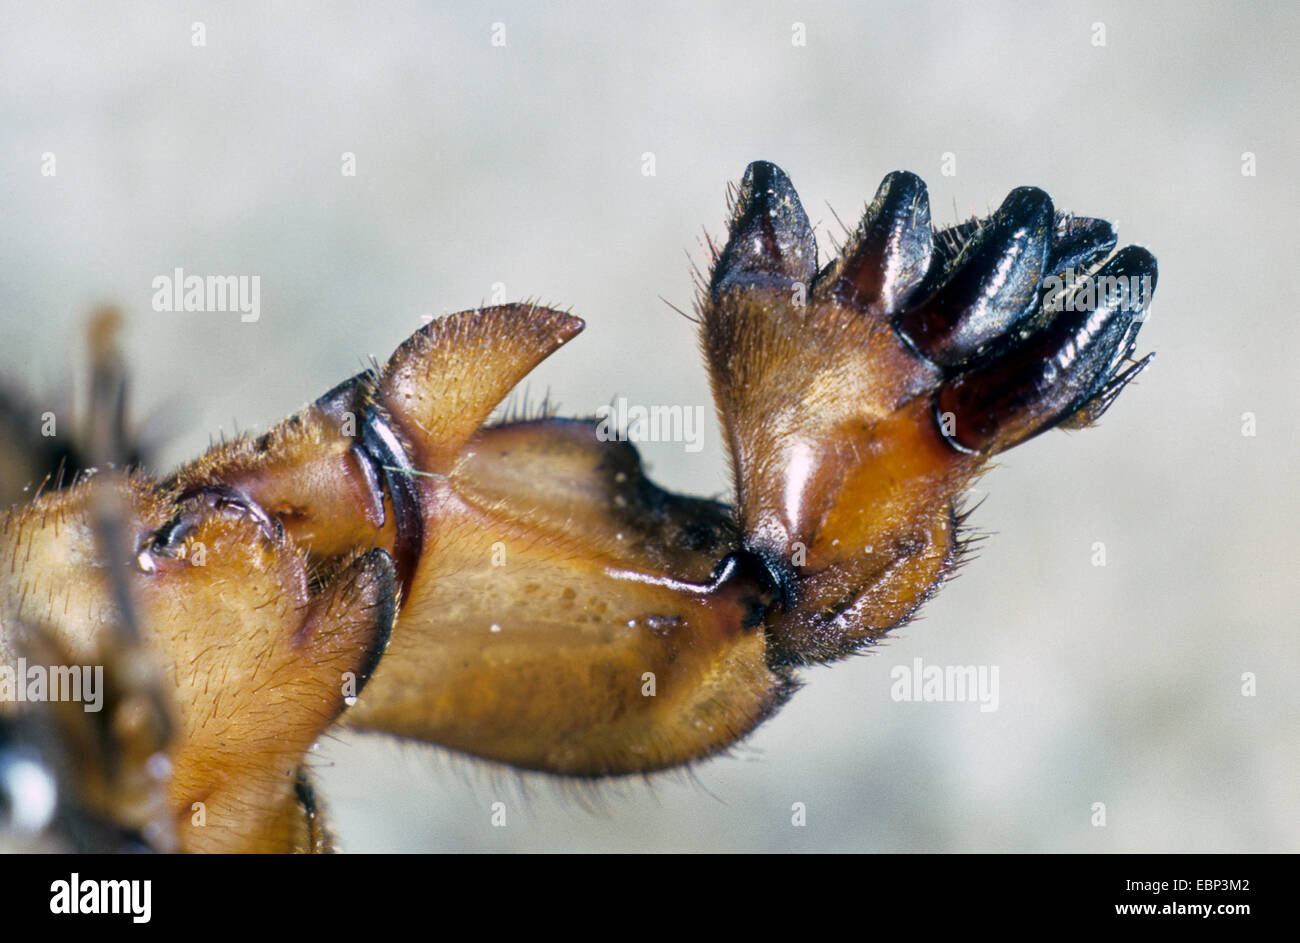 European mole cricket, Mole cricket (Gryllotalpa gryllotalpa), mole-like forelegs, Germany Stock Photo